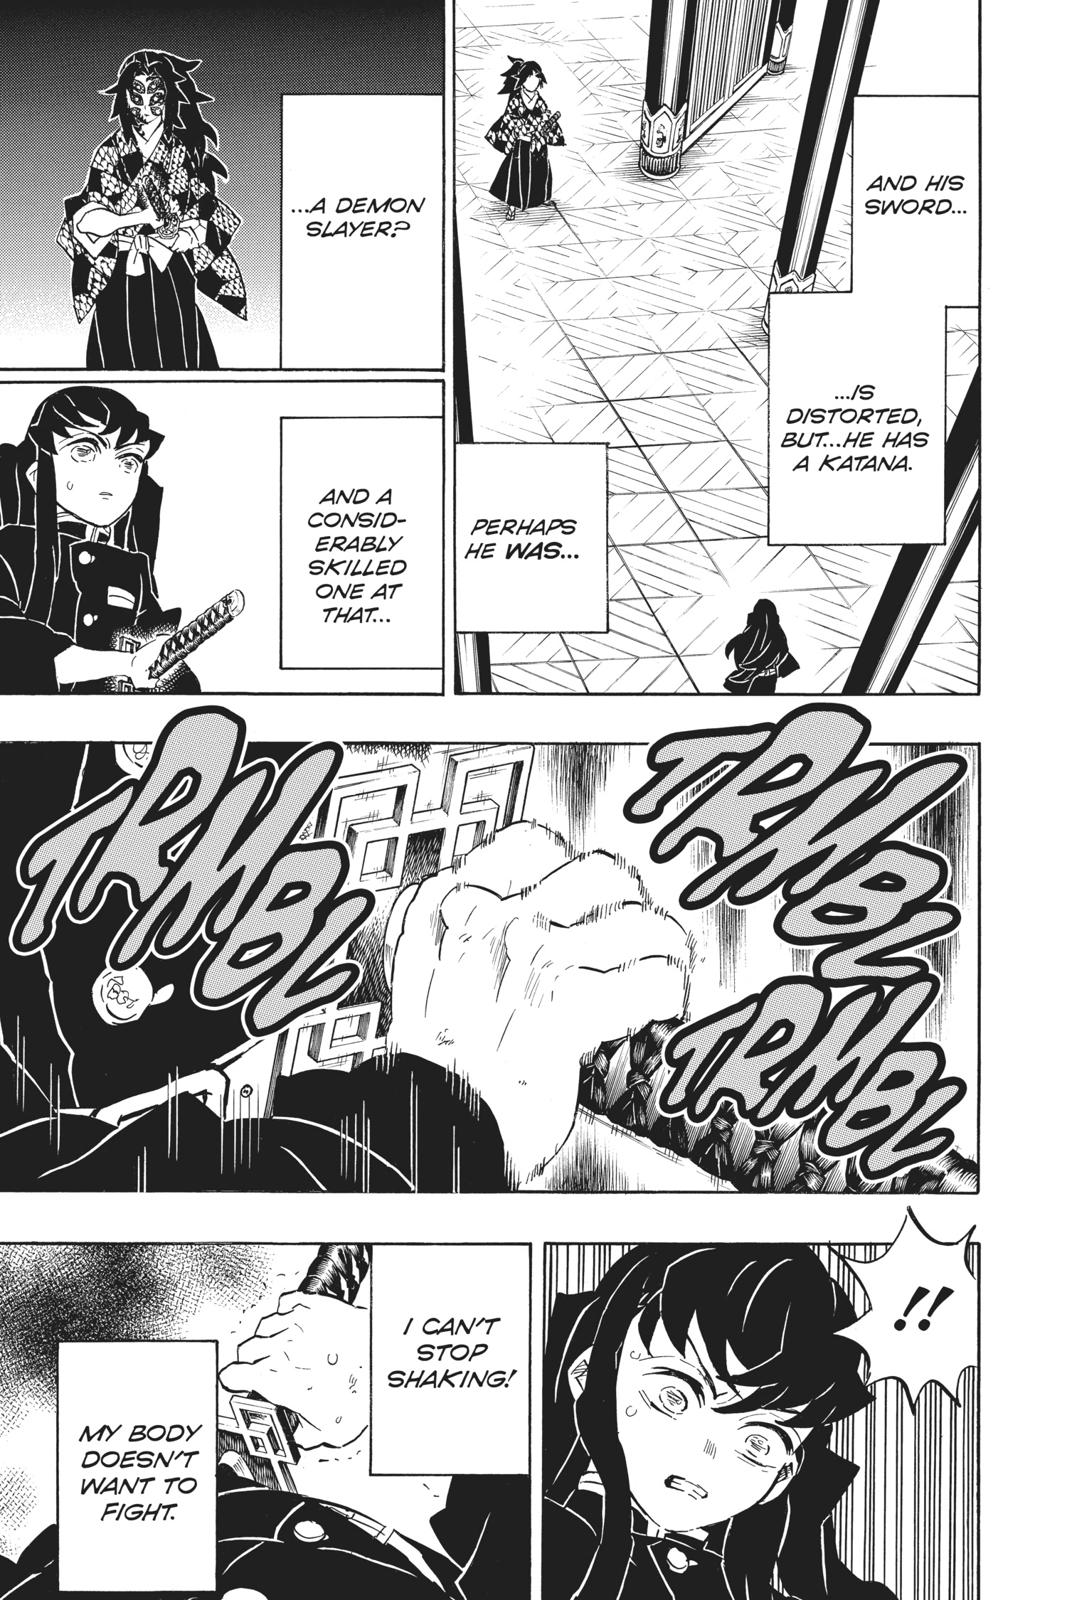 Demon Slayer Manga Manga Chapter - 165 - image 3